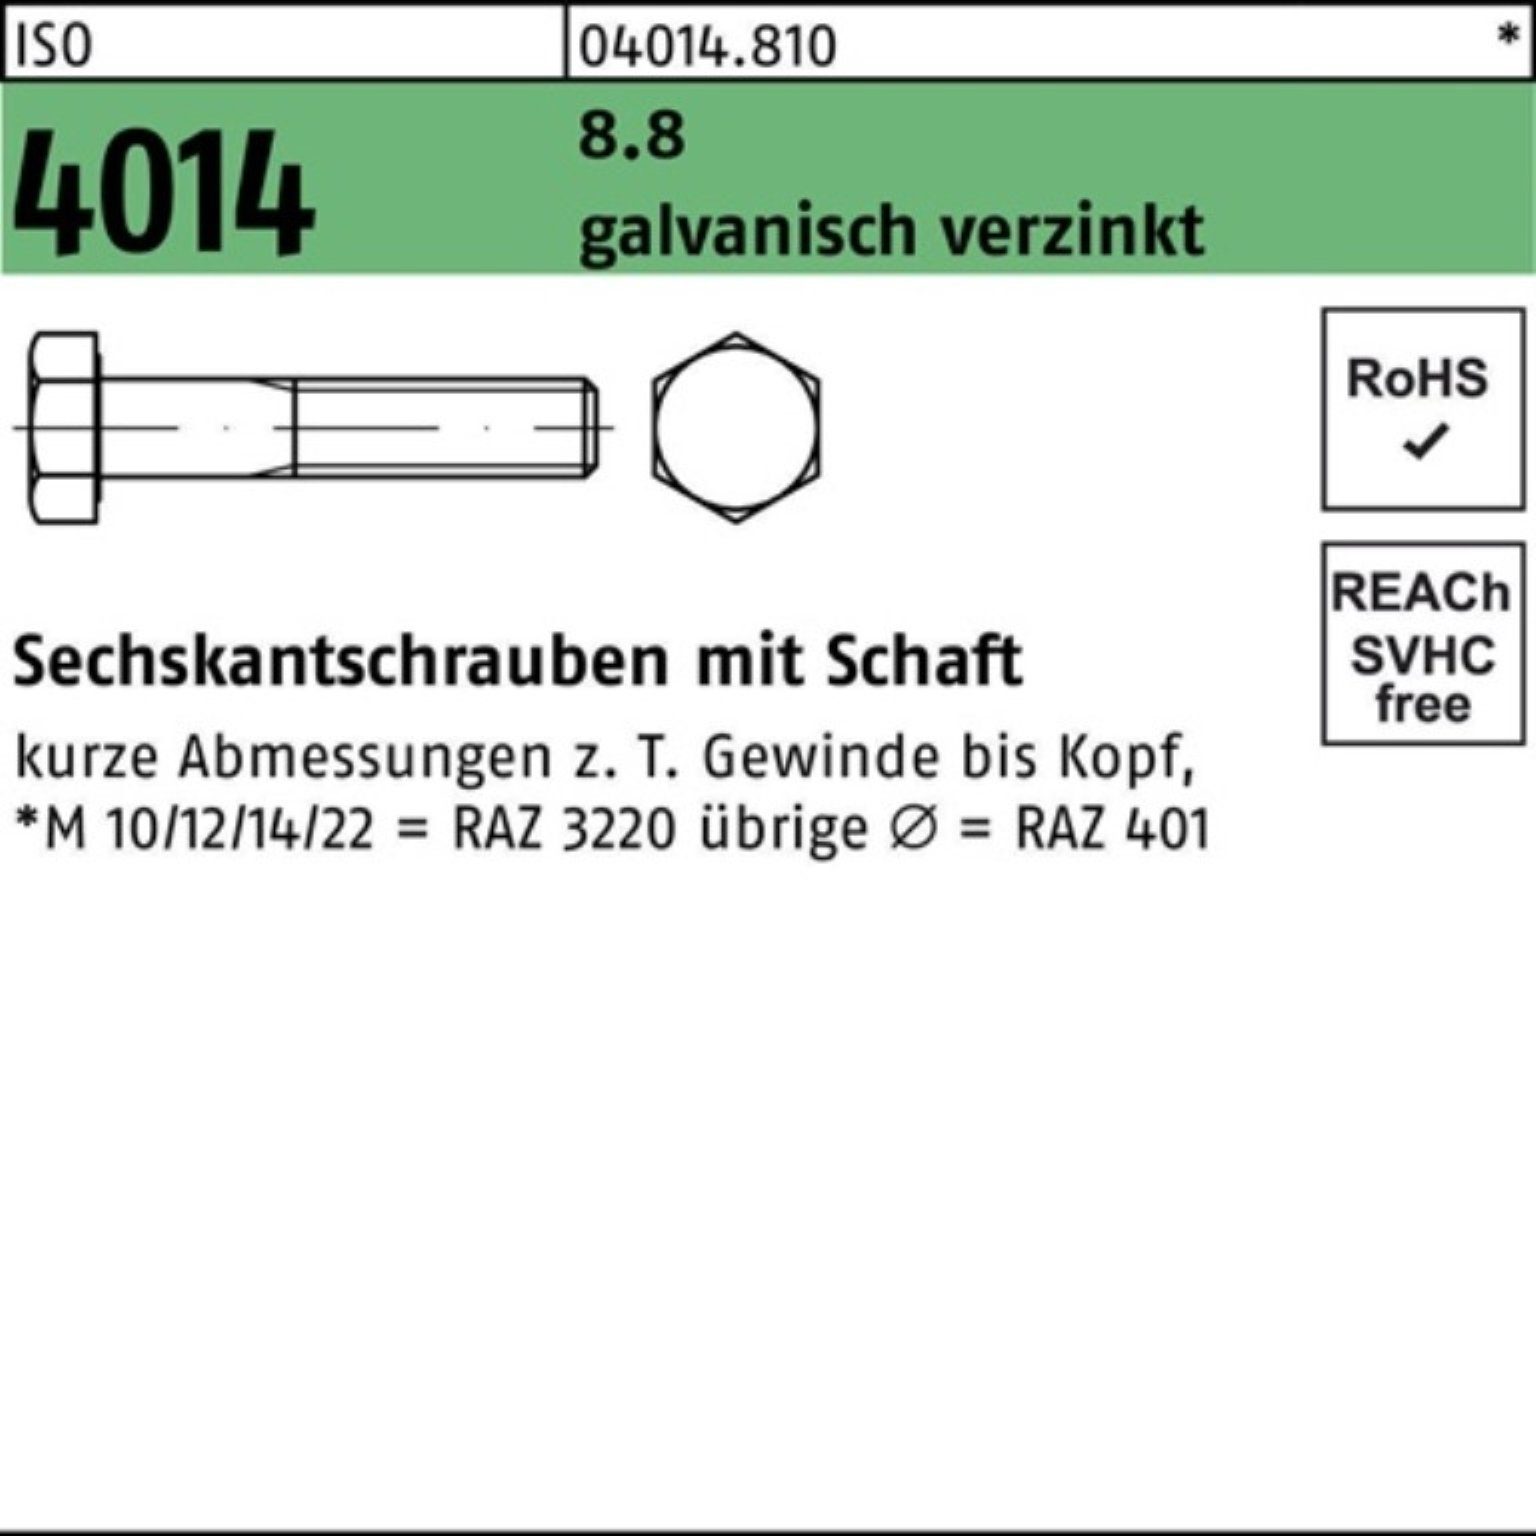 Bufab Sechskantschraube 2 100er Schaft 4014 galv.verz. Sechskantschraube 200 8.8 ISO M16x Pack